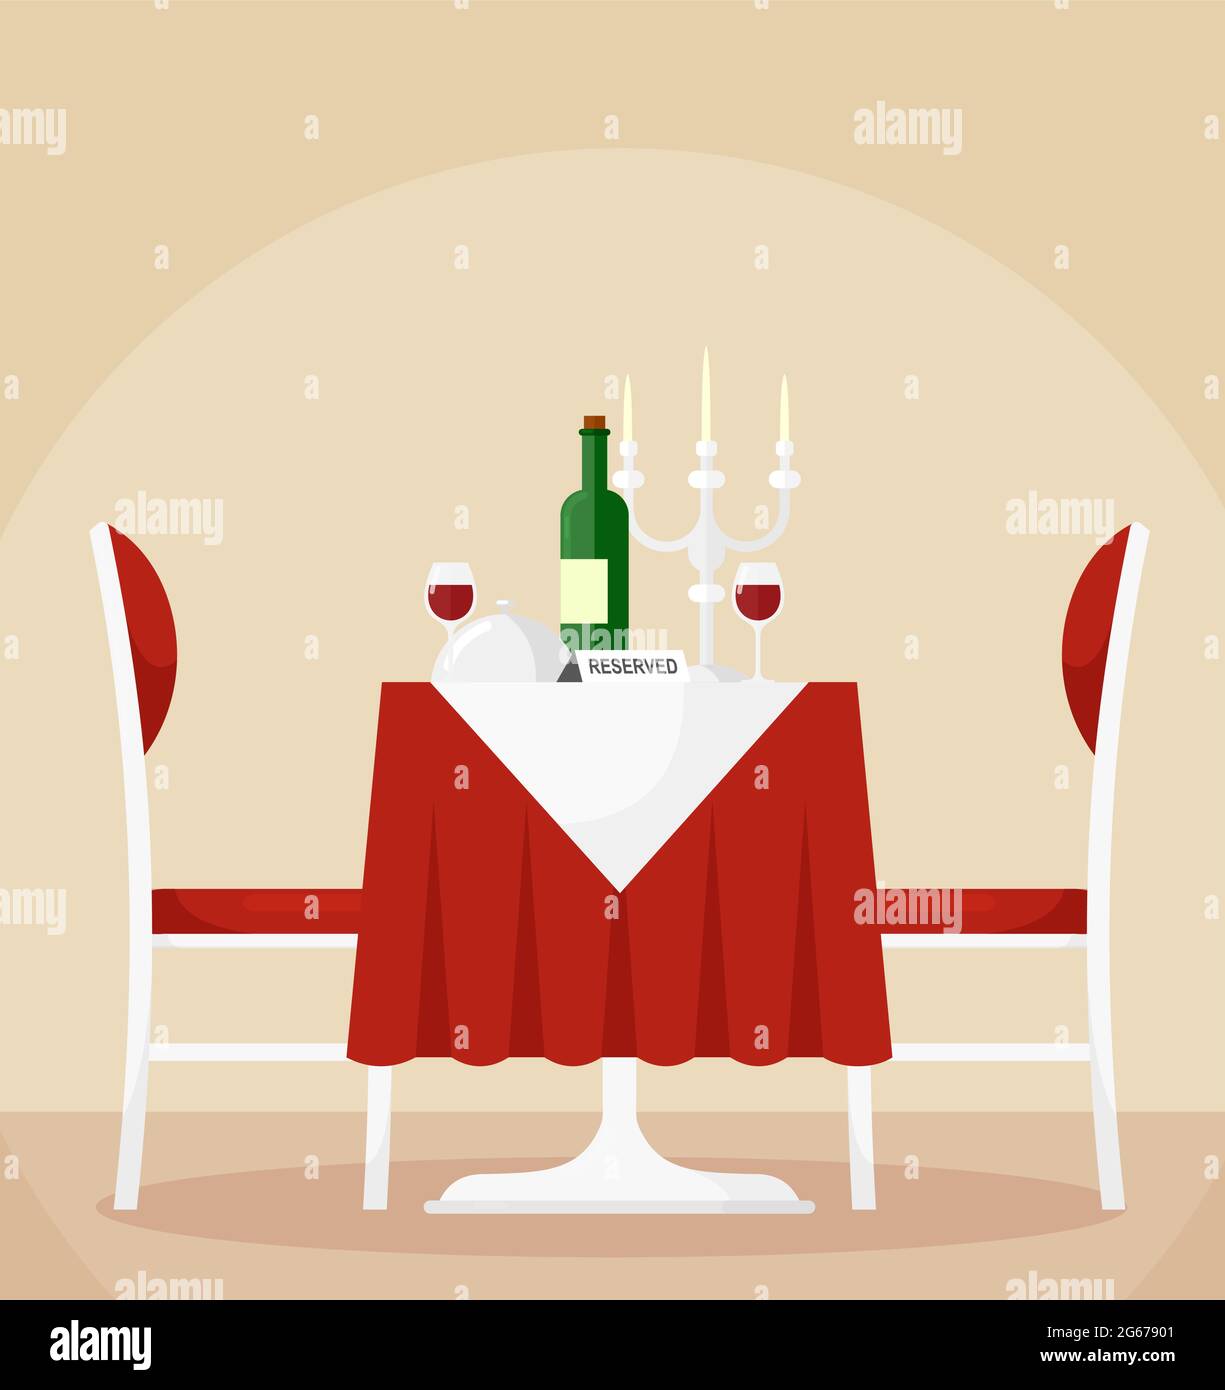 Vektor-Illustration von reservierten Esstisch und Stühlen für zwei Personen mit einer Flasche Wein, Gläsern, Kerzen. Romantisches Dinner-Konzept in flacher Karikatur Stock Vektor